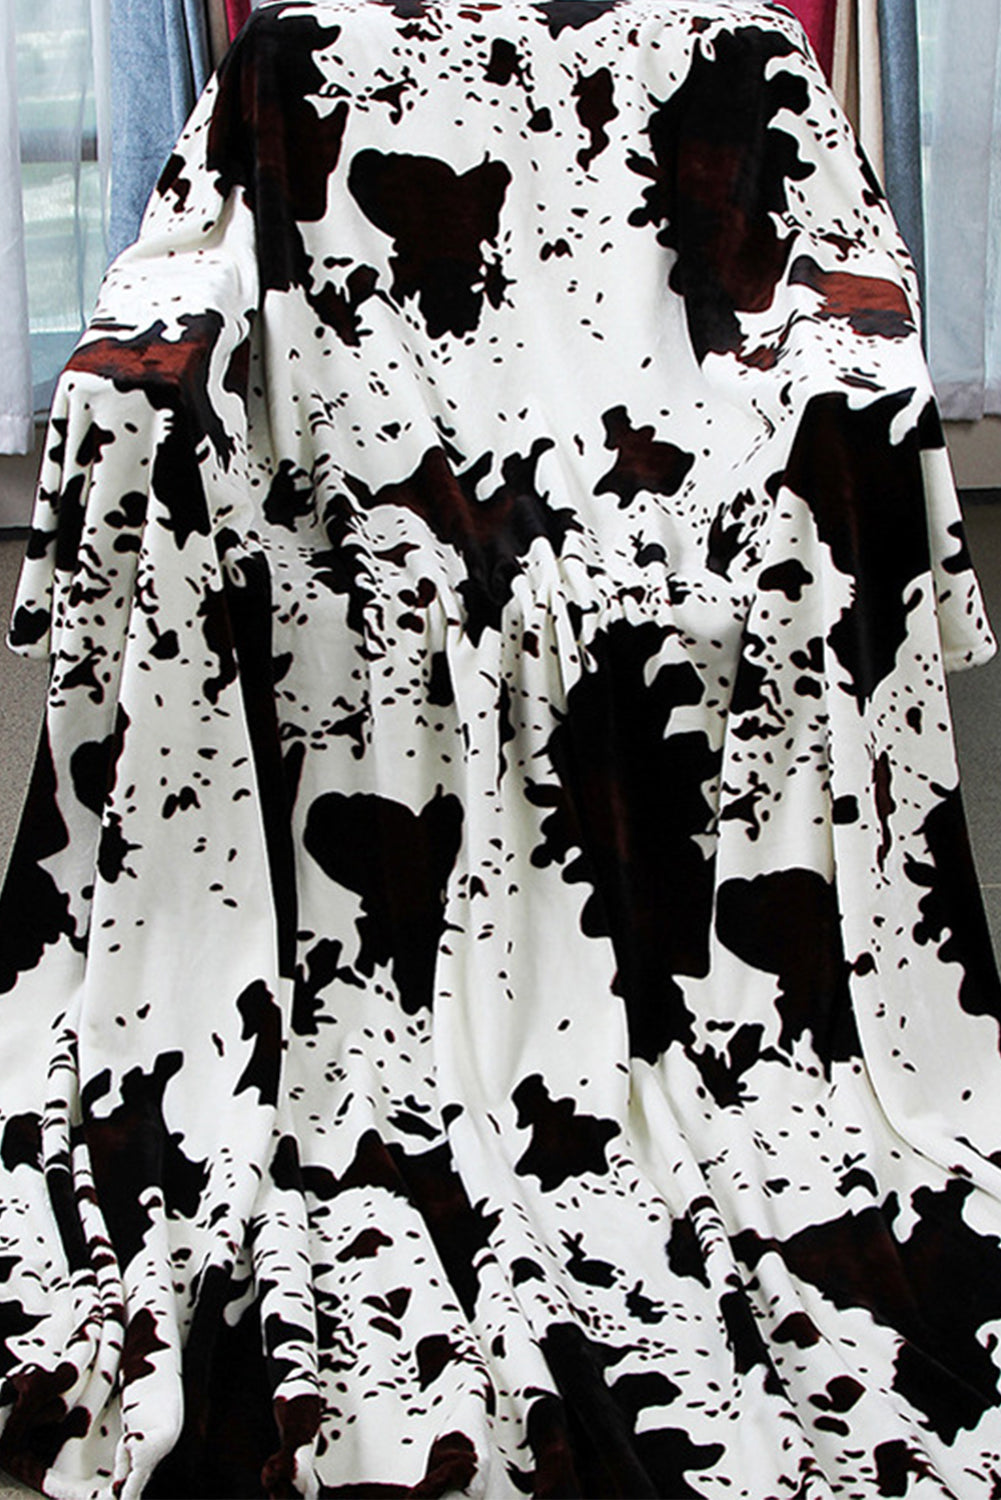 Multicolour Cow Spots Plush Blanket 150*200cm